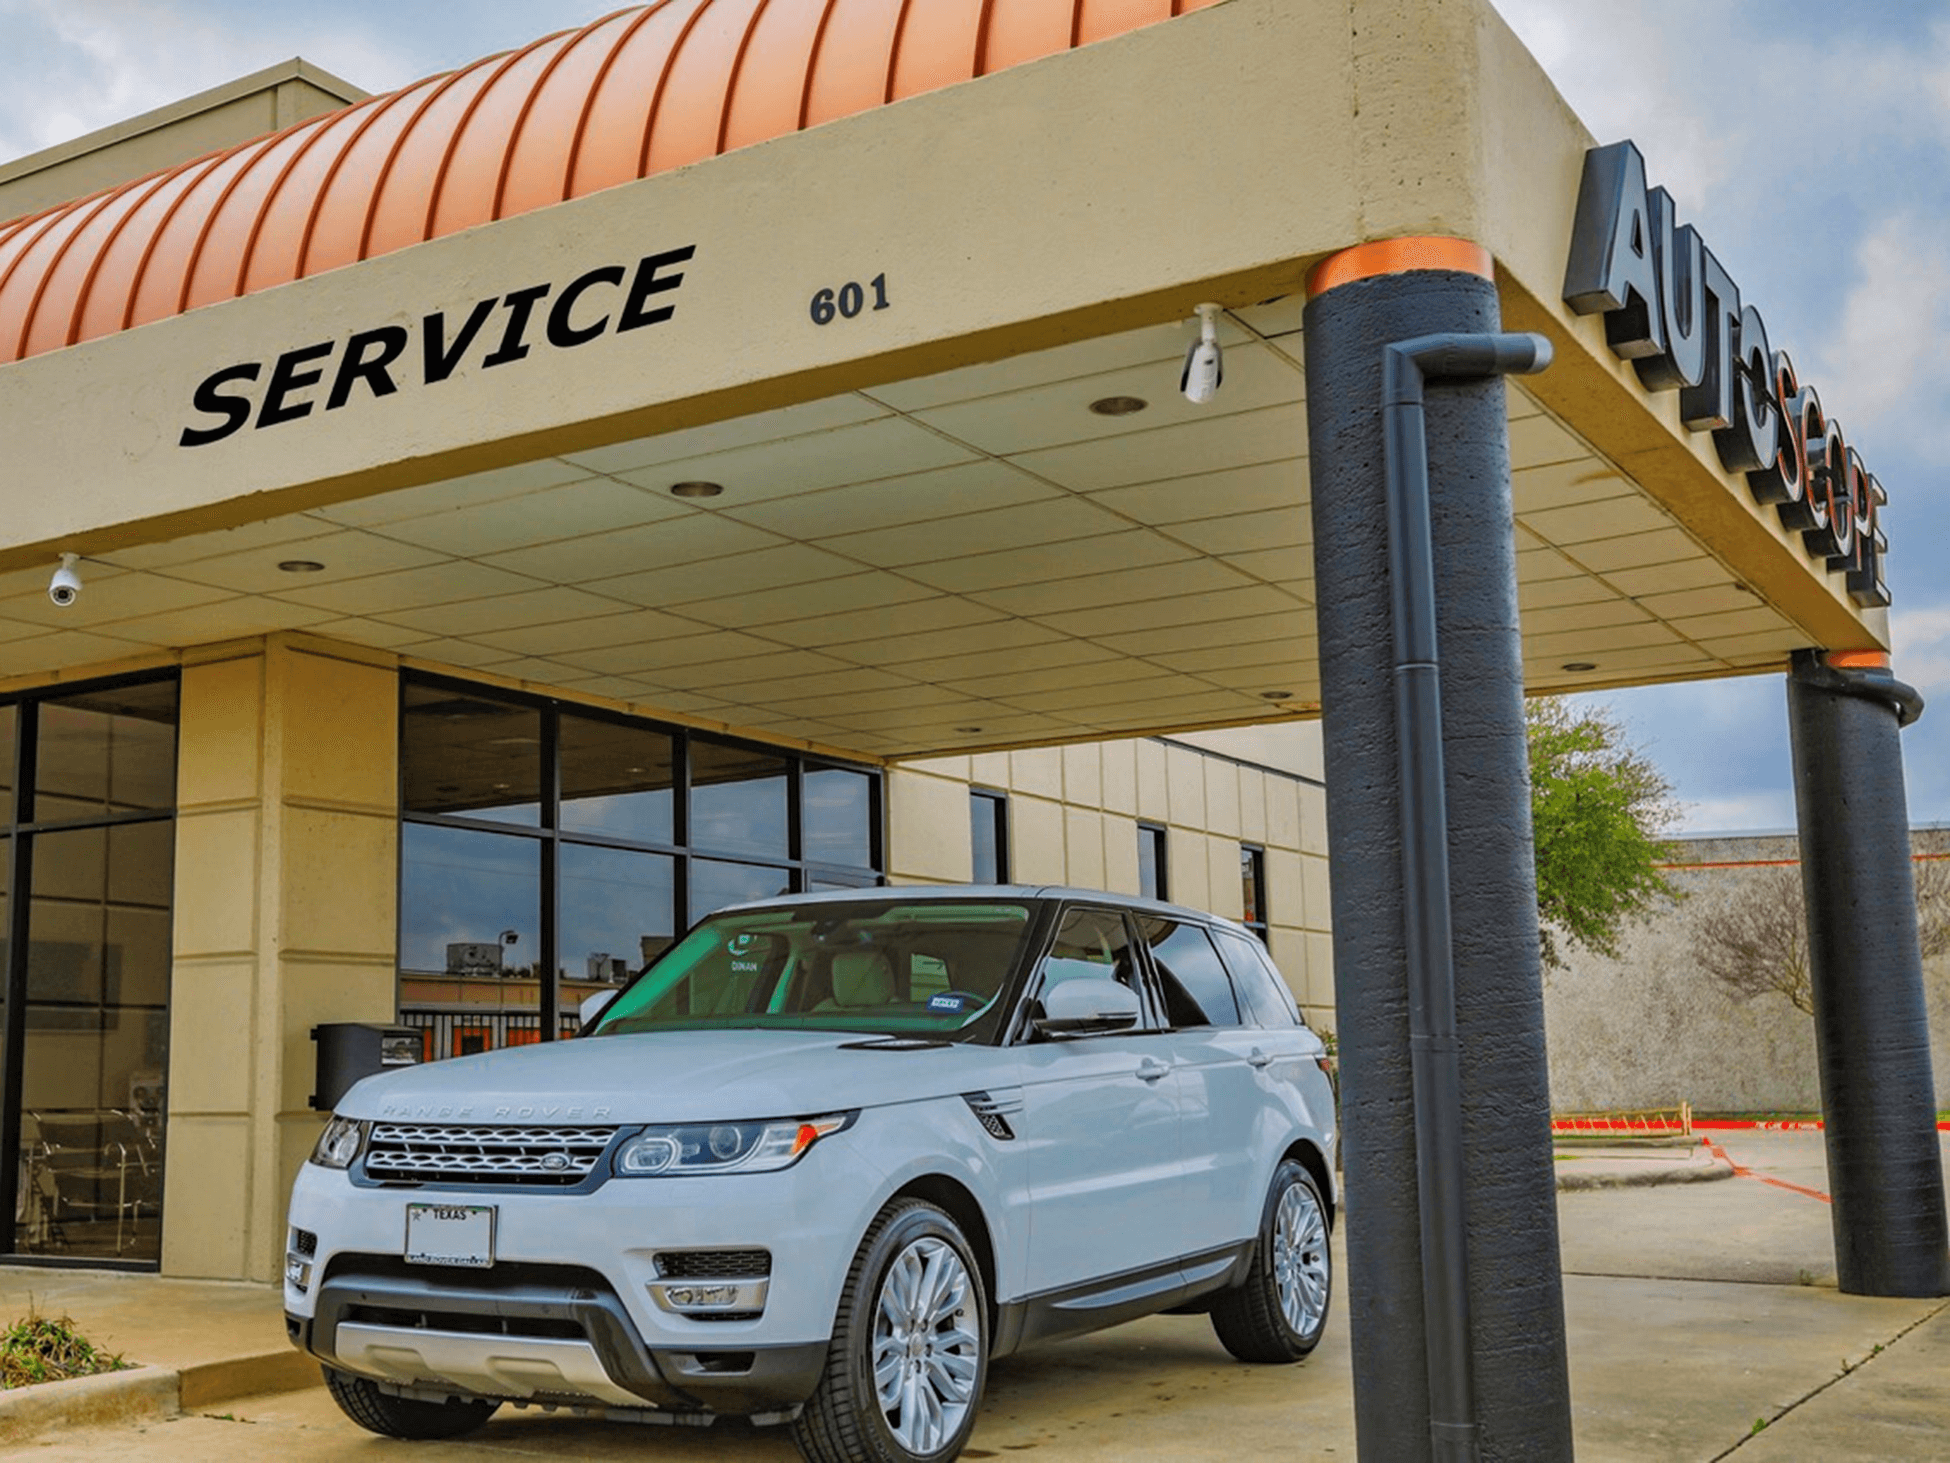 Range Rover Service in Dallas